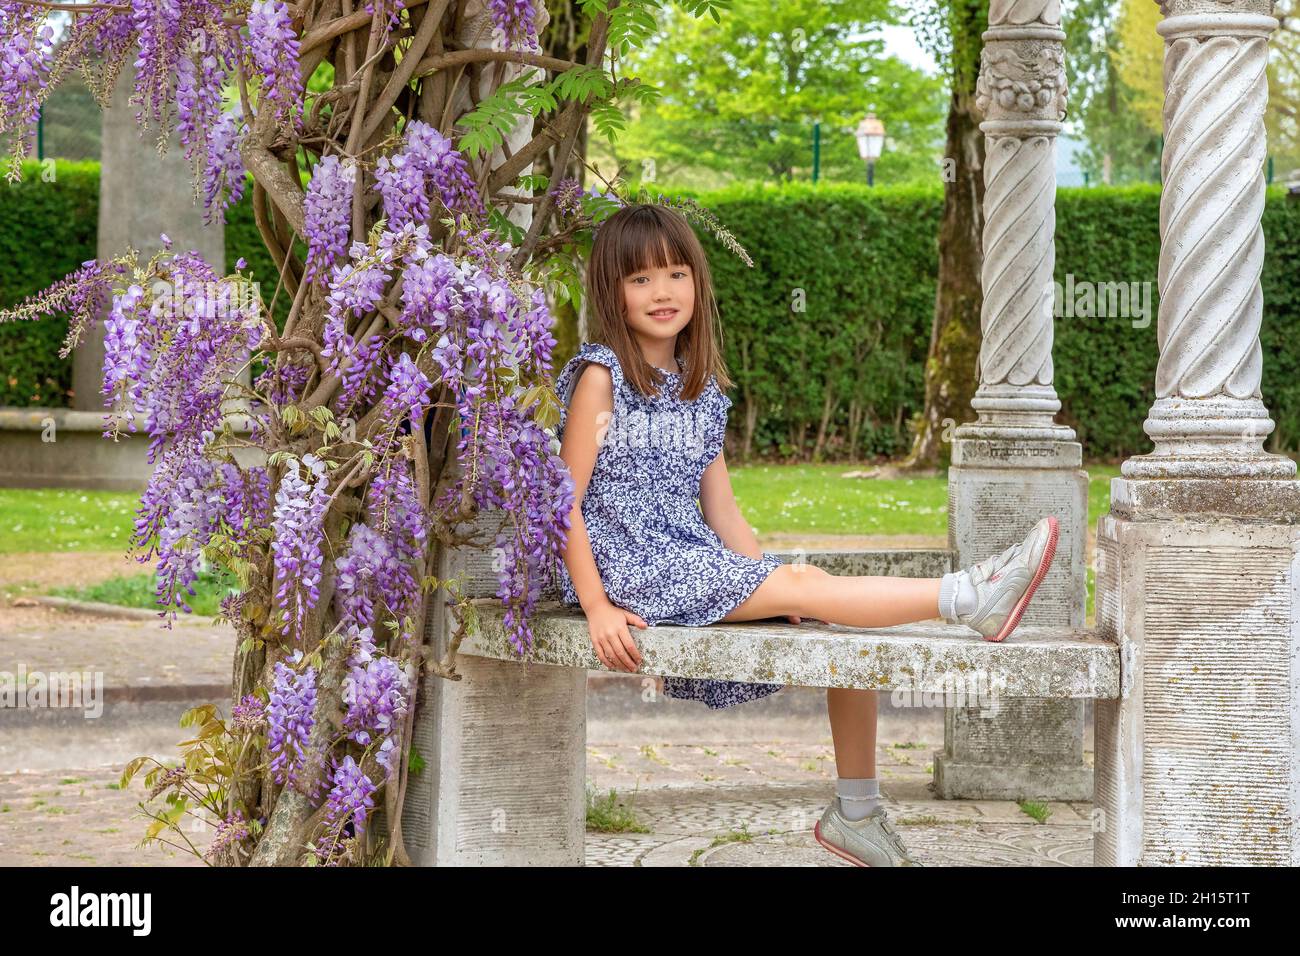 Jeune fille de sept ans assise sous un arbre de wisteria à Honfleur, France Banque D'Images